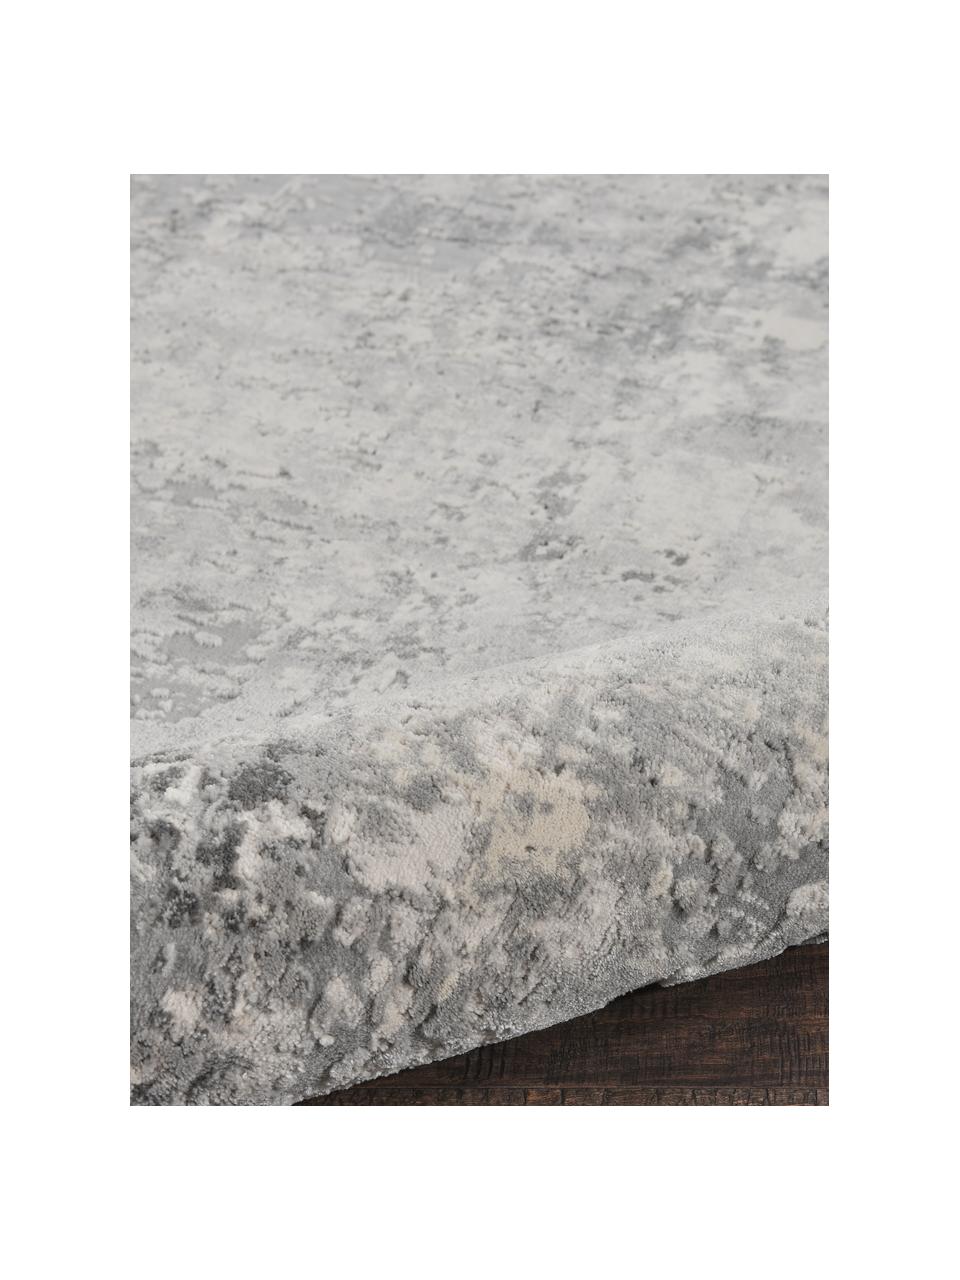 Vloerkleed Rustic in grijs/beige met hoog-laag structuur, Bovenzijde: 51% polypropyleen, 49% po, Onderzijde: latex, Grijs, beige, B 240 x L 320 cm (maat L)